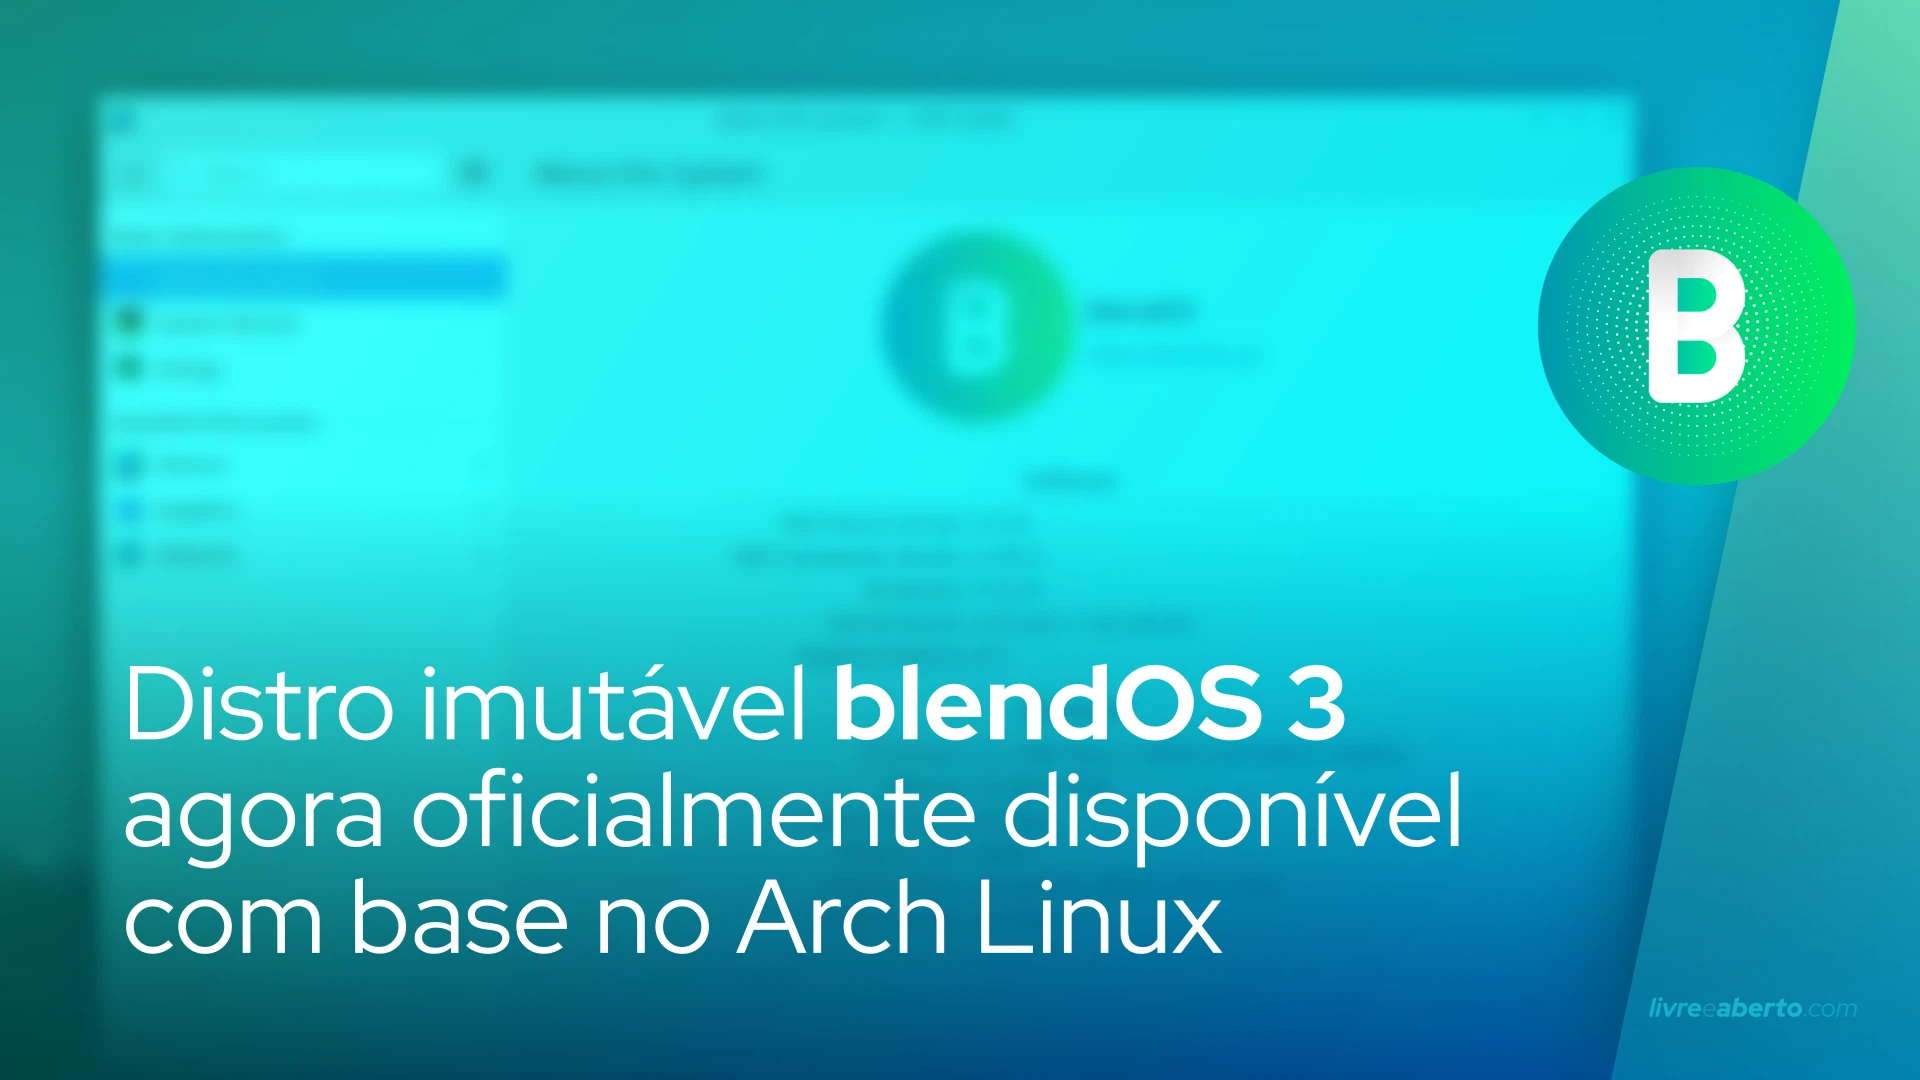 Distro imutável blendOS 3 agora oficialmente disponível com base no Arch Linux